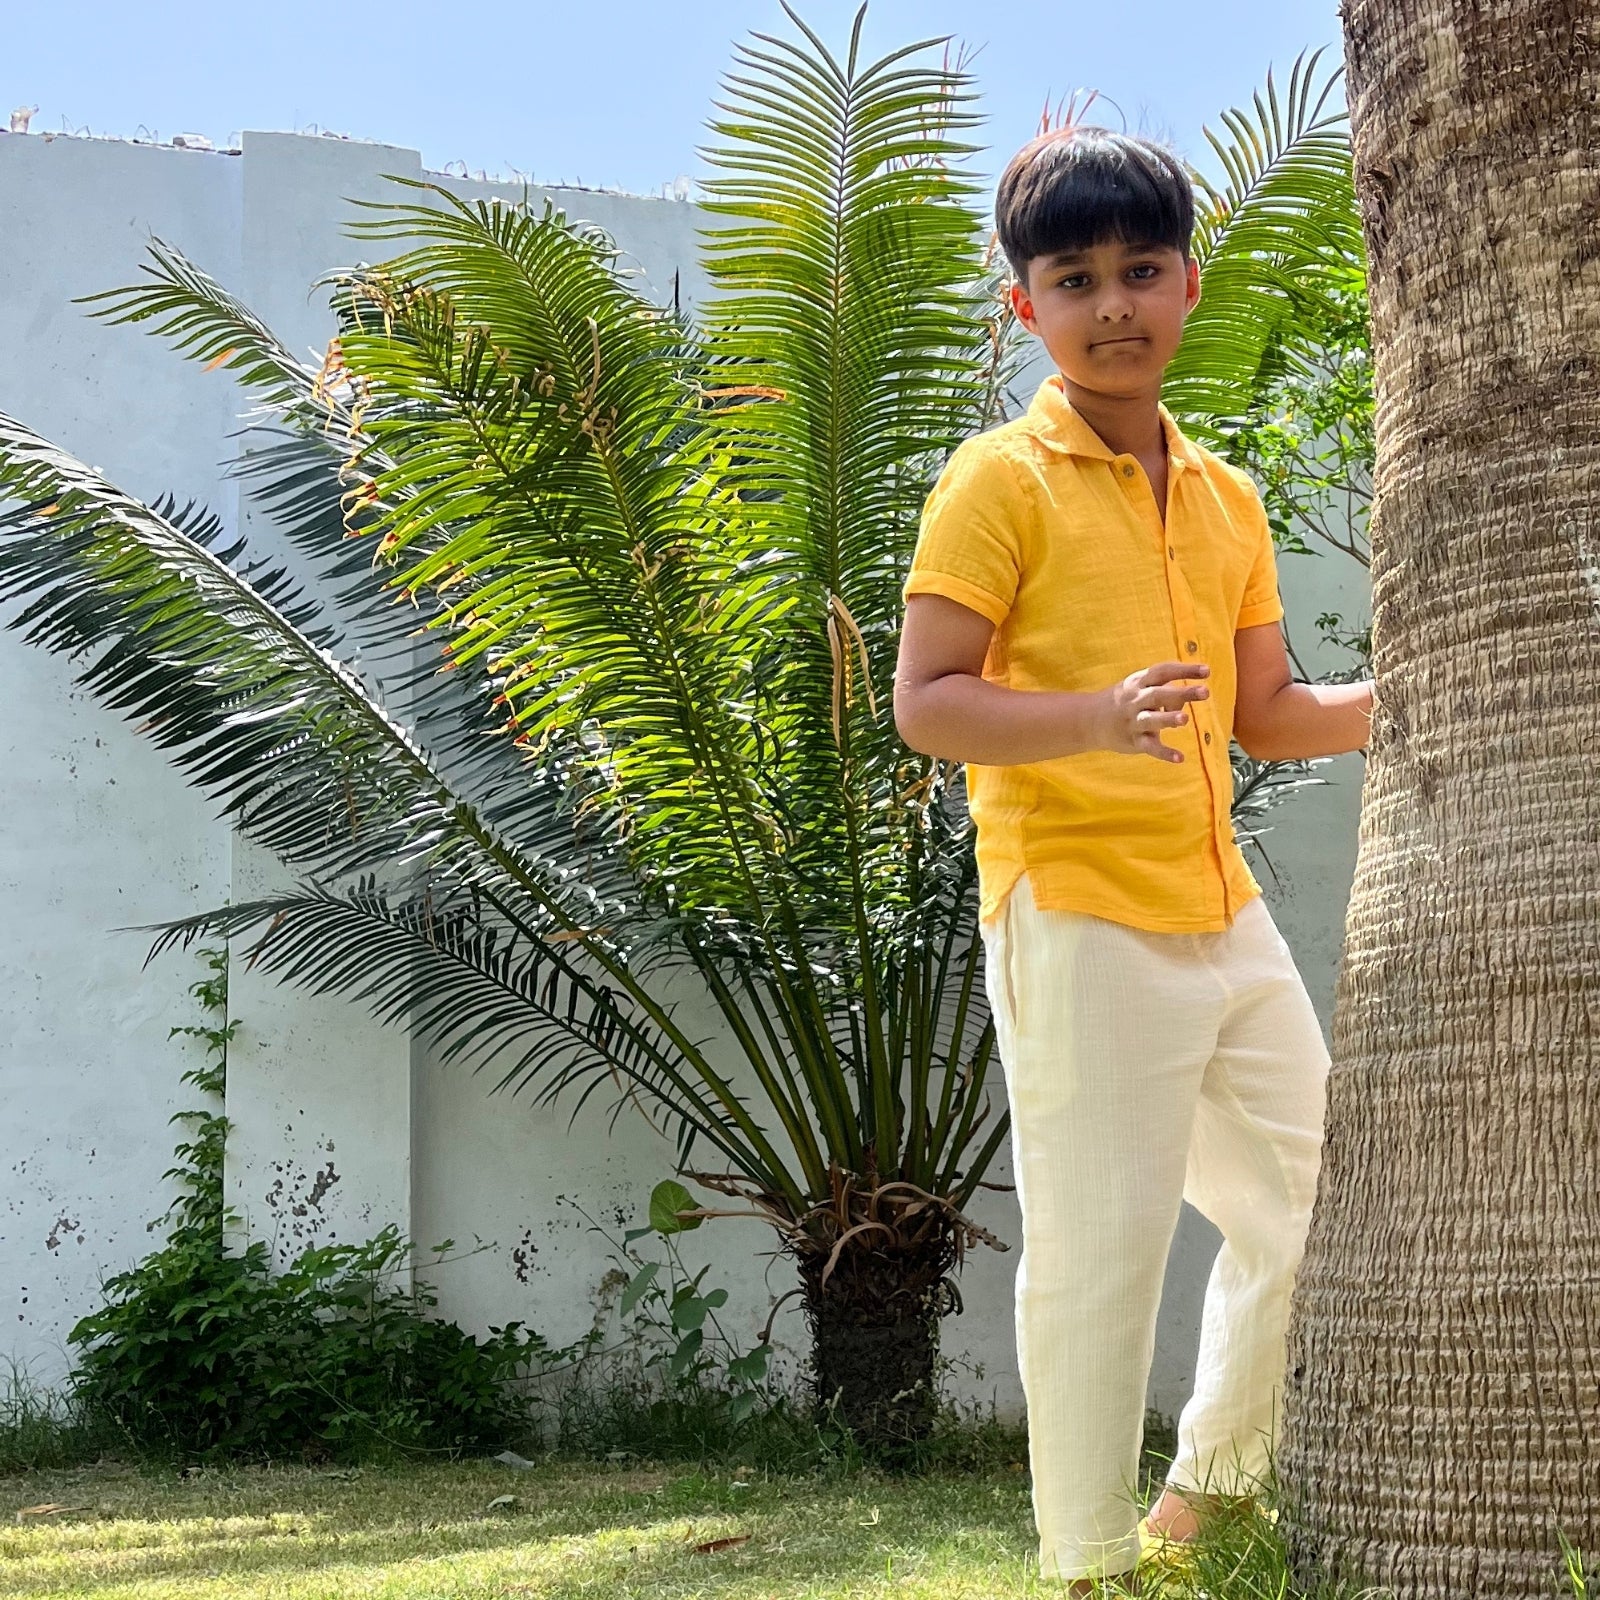 Resort Collar Shirt with Resort Pant Yellow & White